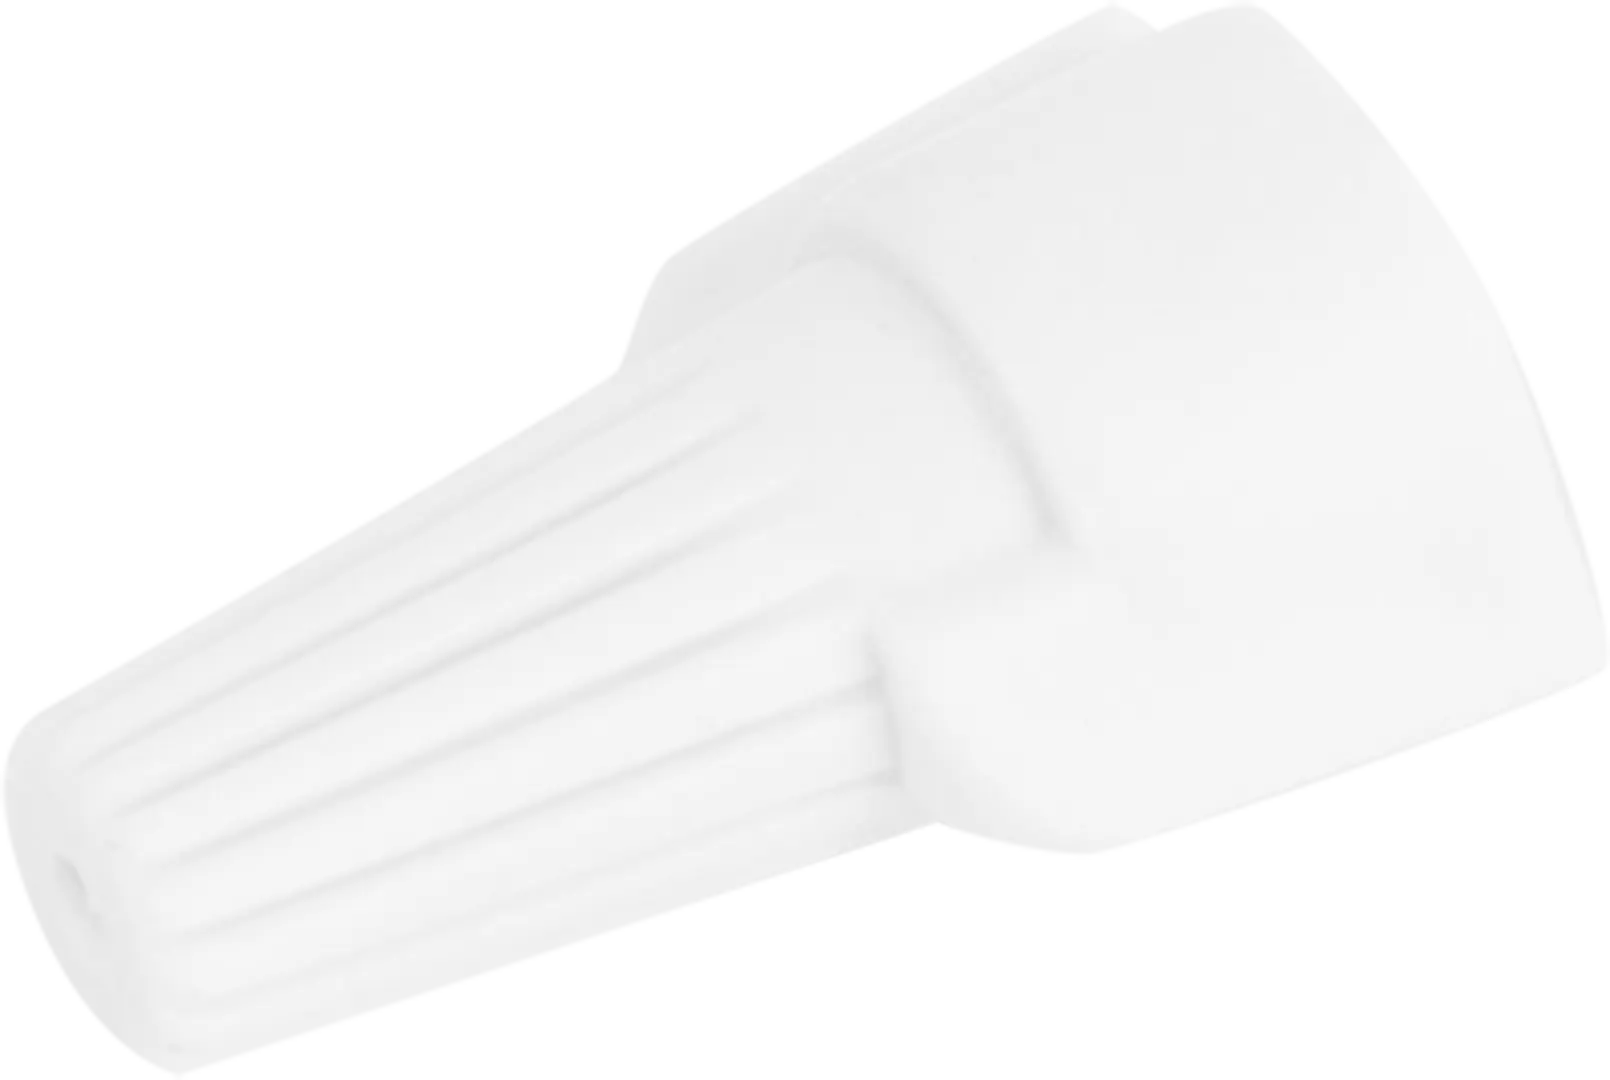 Соединительный изолирующий зажим Duwi СИЗ-Л-3 5-15 мм цвет белый 10 шт. соединительный изолирующий зажим duwi сиз л 3 5 15 мм белый 10 шт